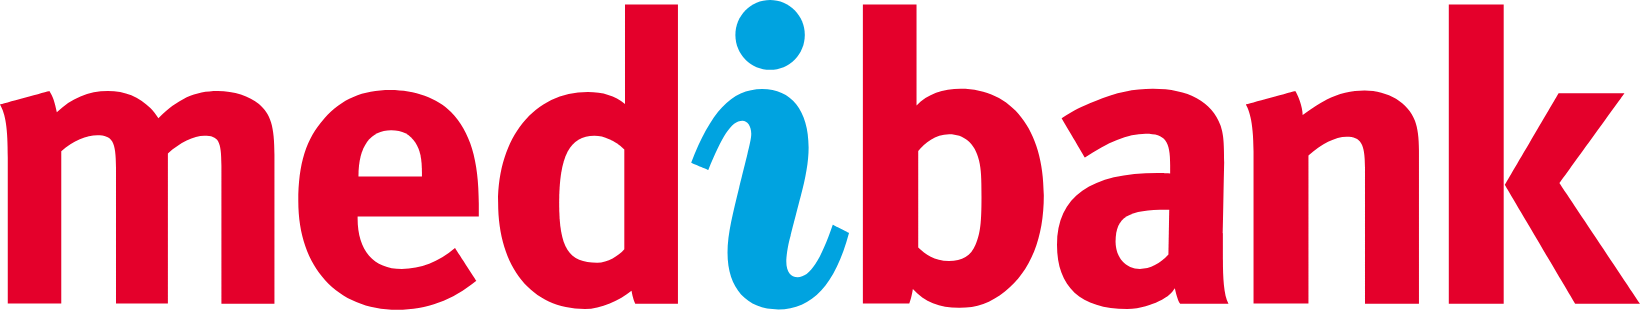 Medibank logo large (transparent PNG)